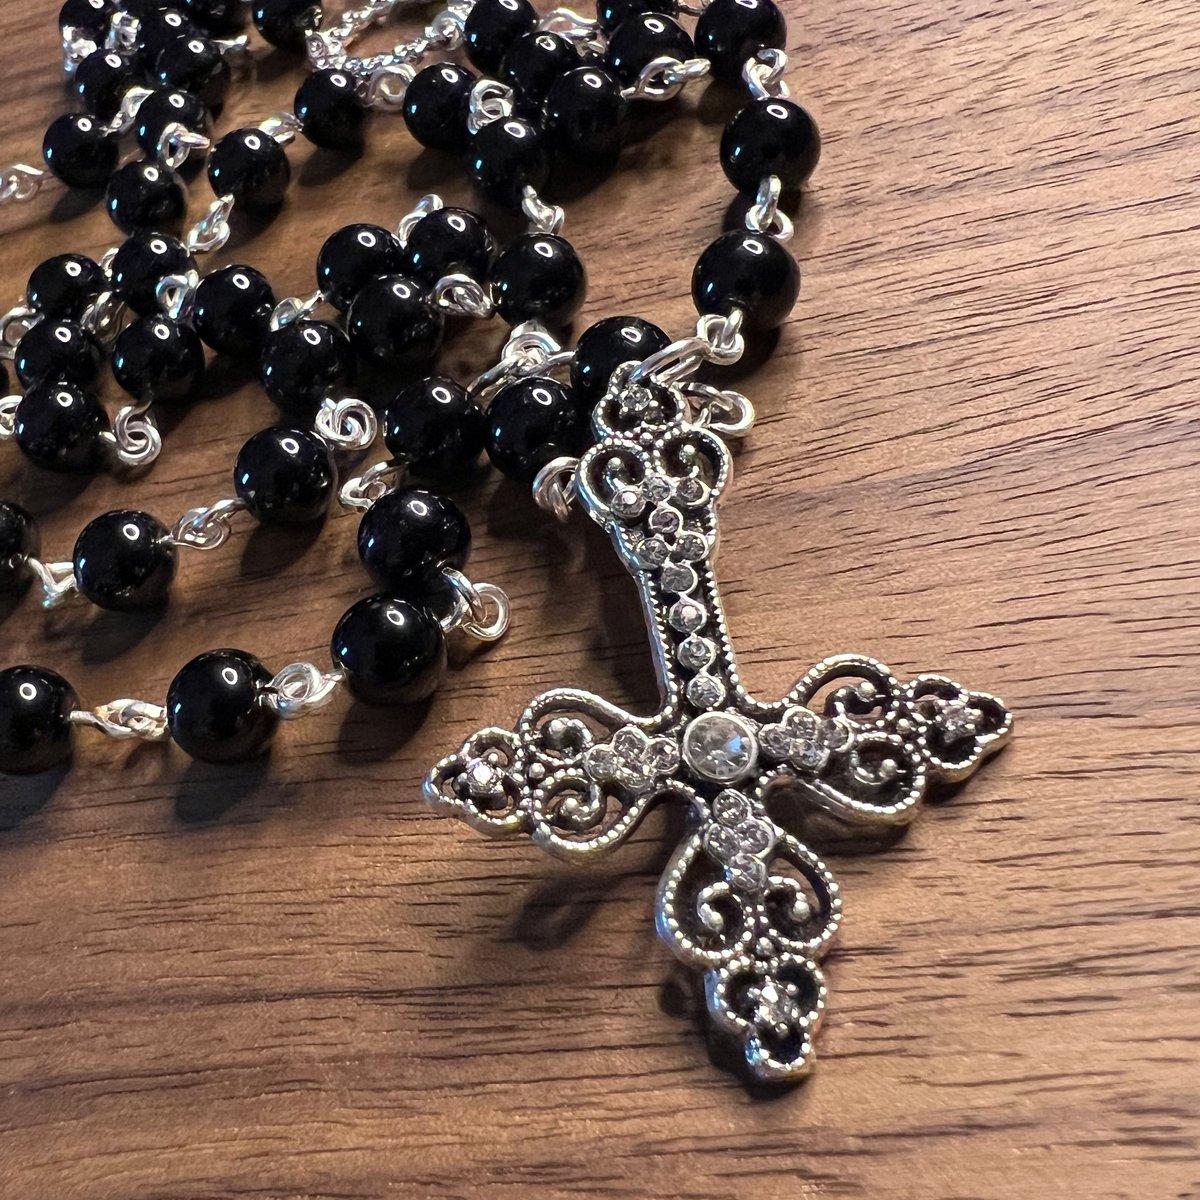 Satanic Rosaries